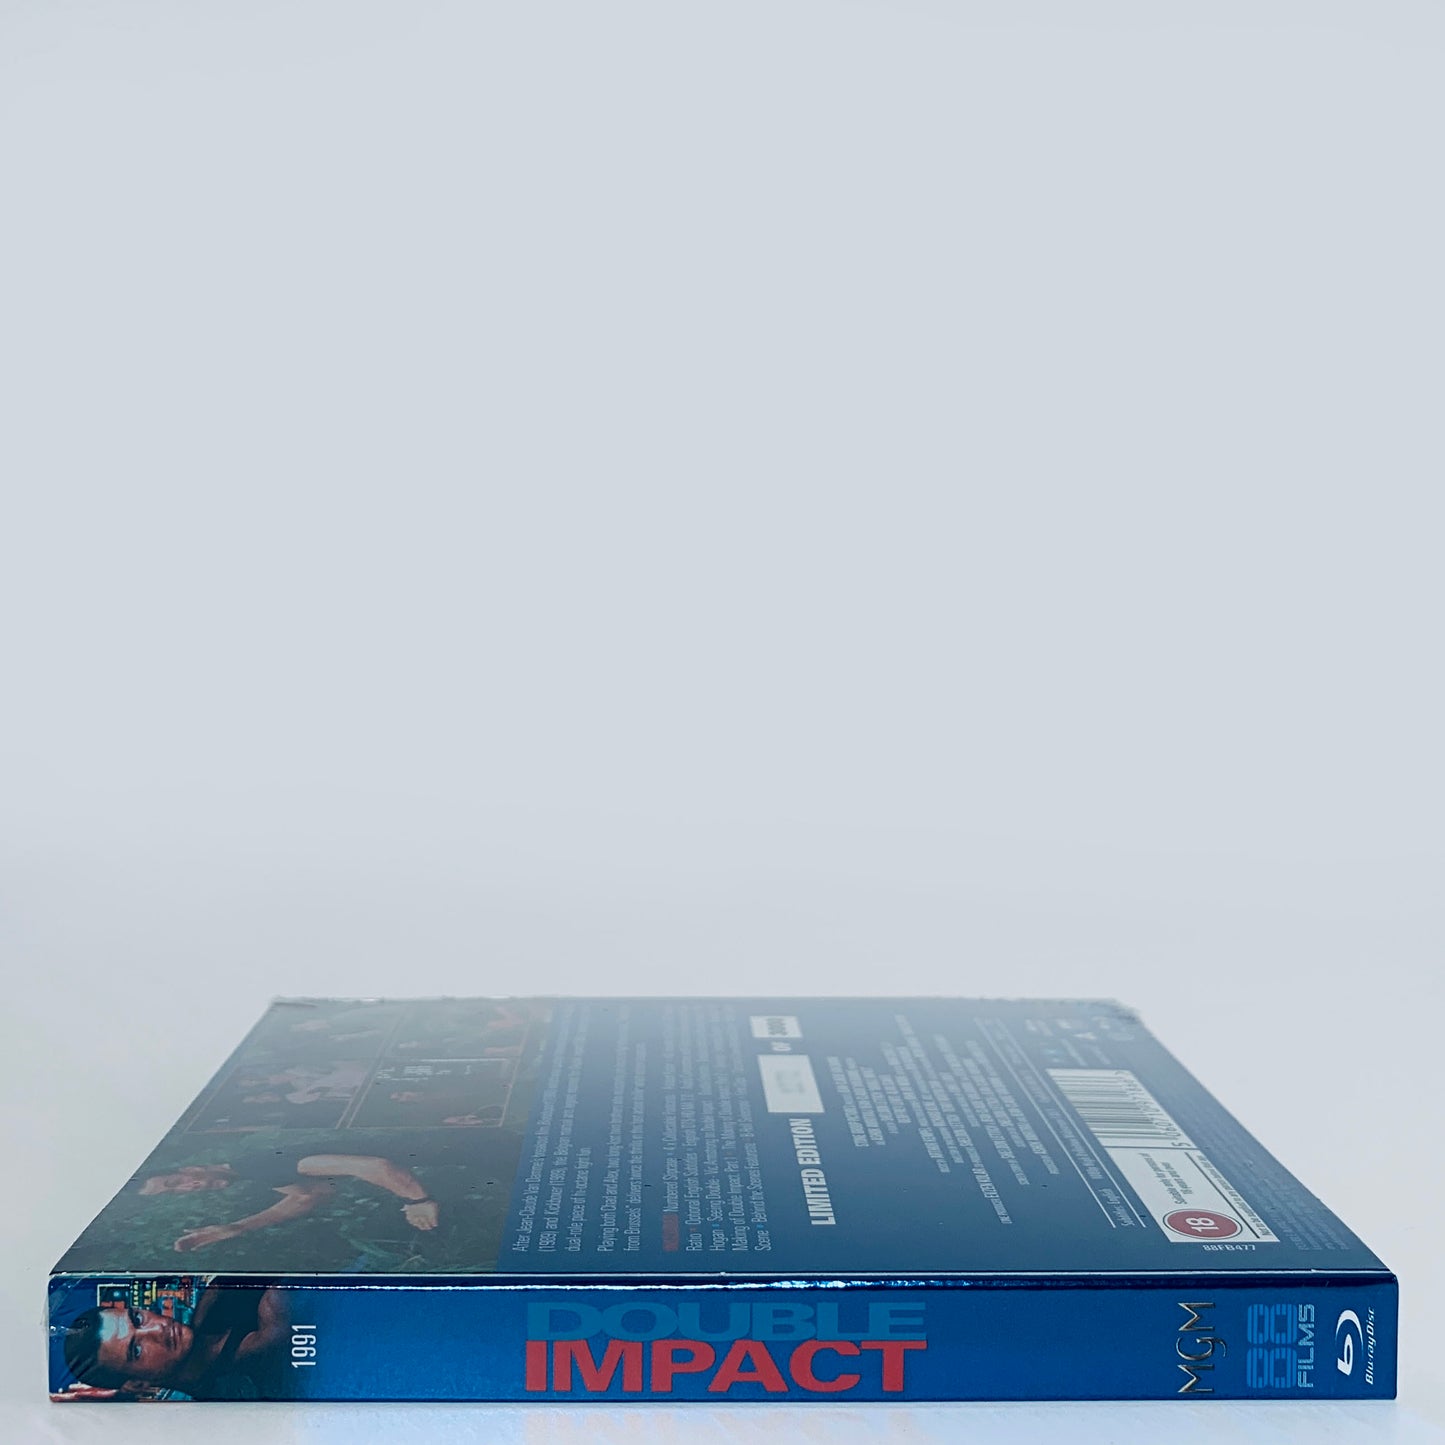 Double Impact Region B Blu-ray 88 Films UK Limited Jean-Claude Van Damme